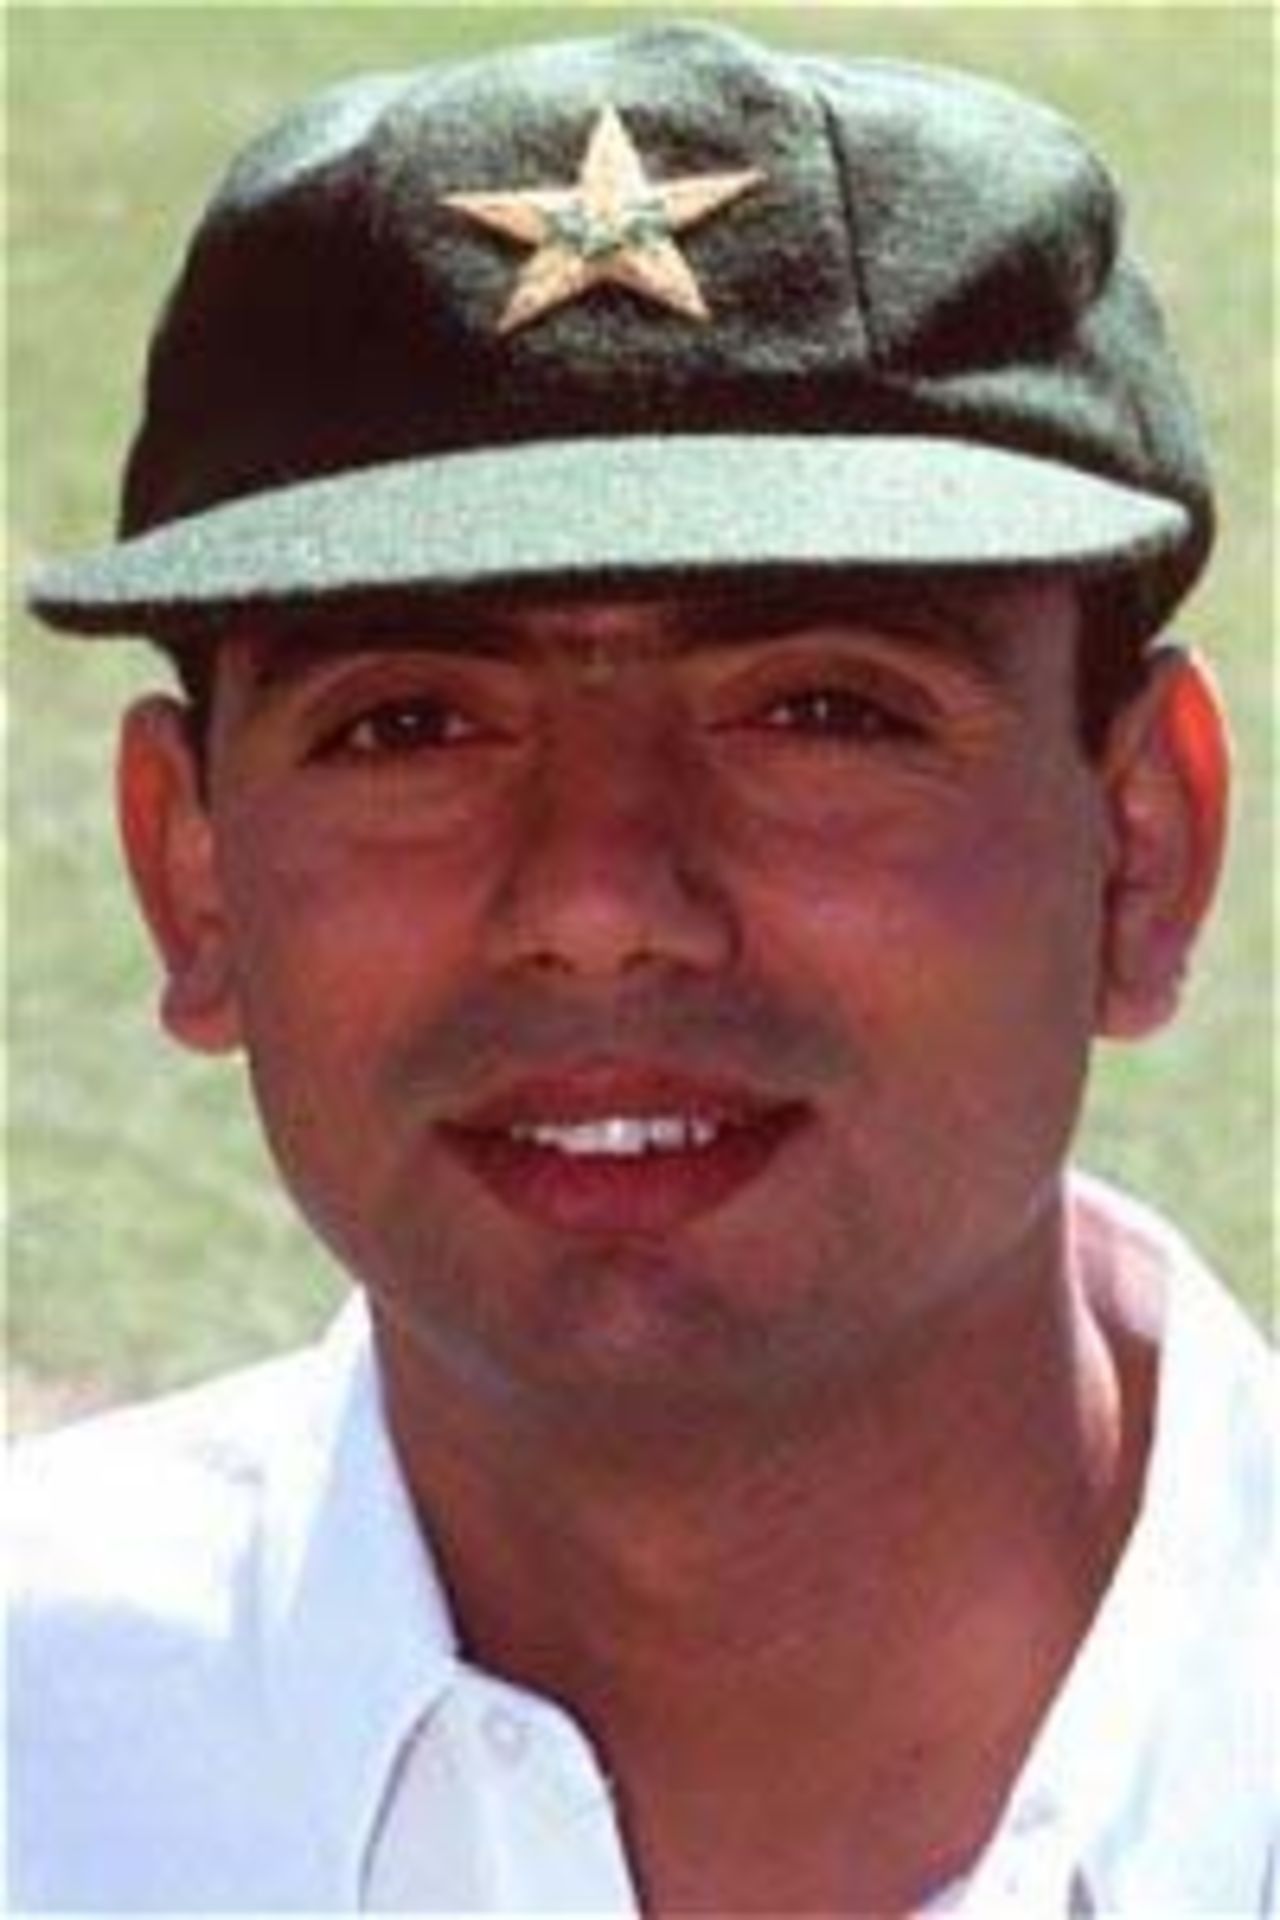 Portrait of Saqlain Mushtaq, Pakistan in Australia, 1999/2000